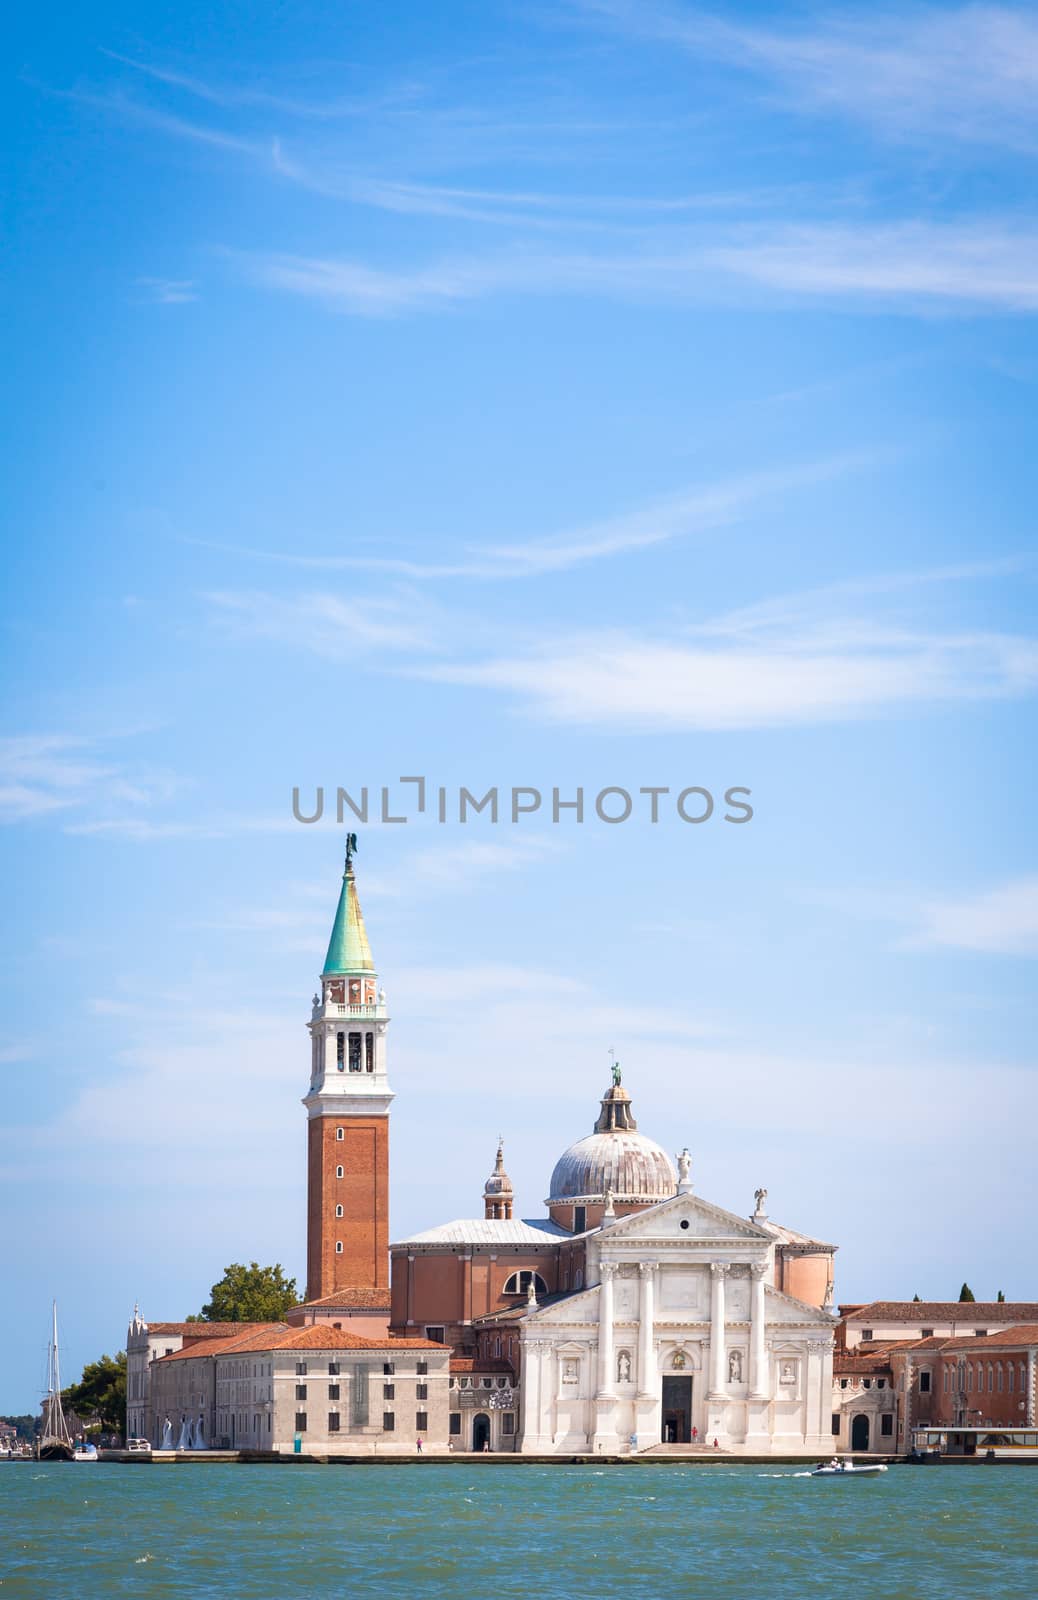 VENICE, ITALY - JUNE 27, 2016: San Giorgio Maggiore by Perseomedusa